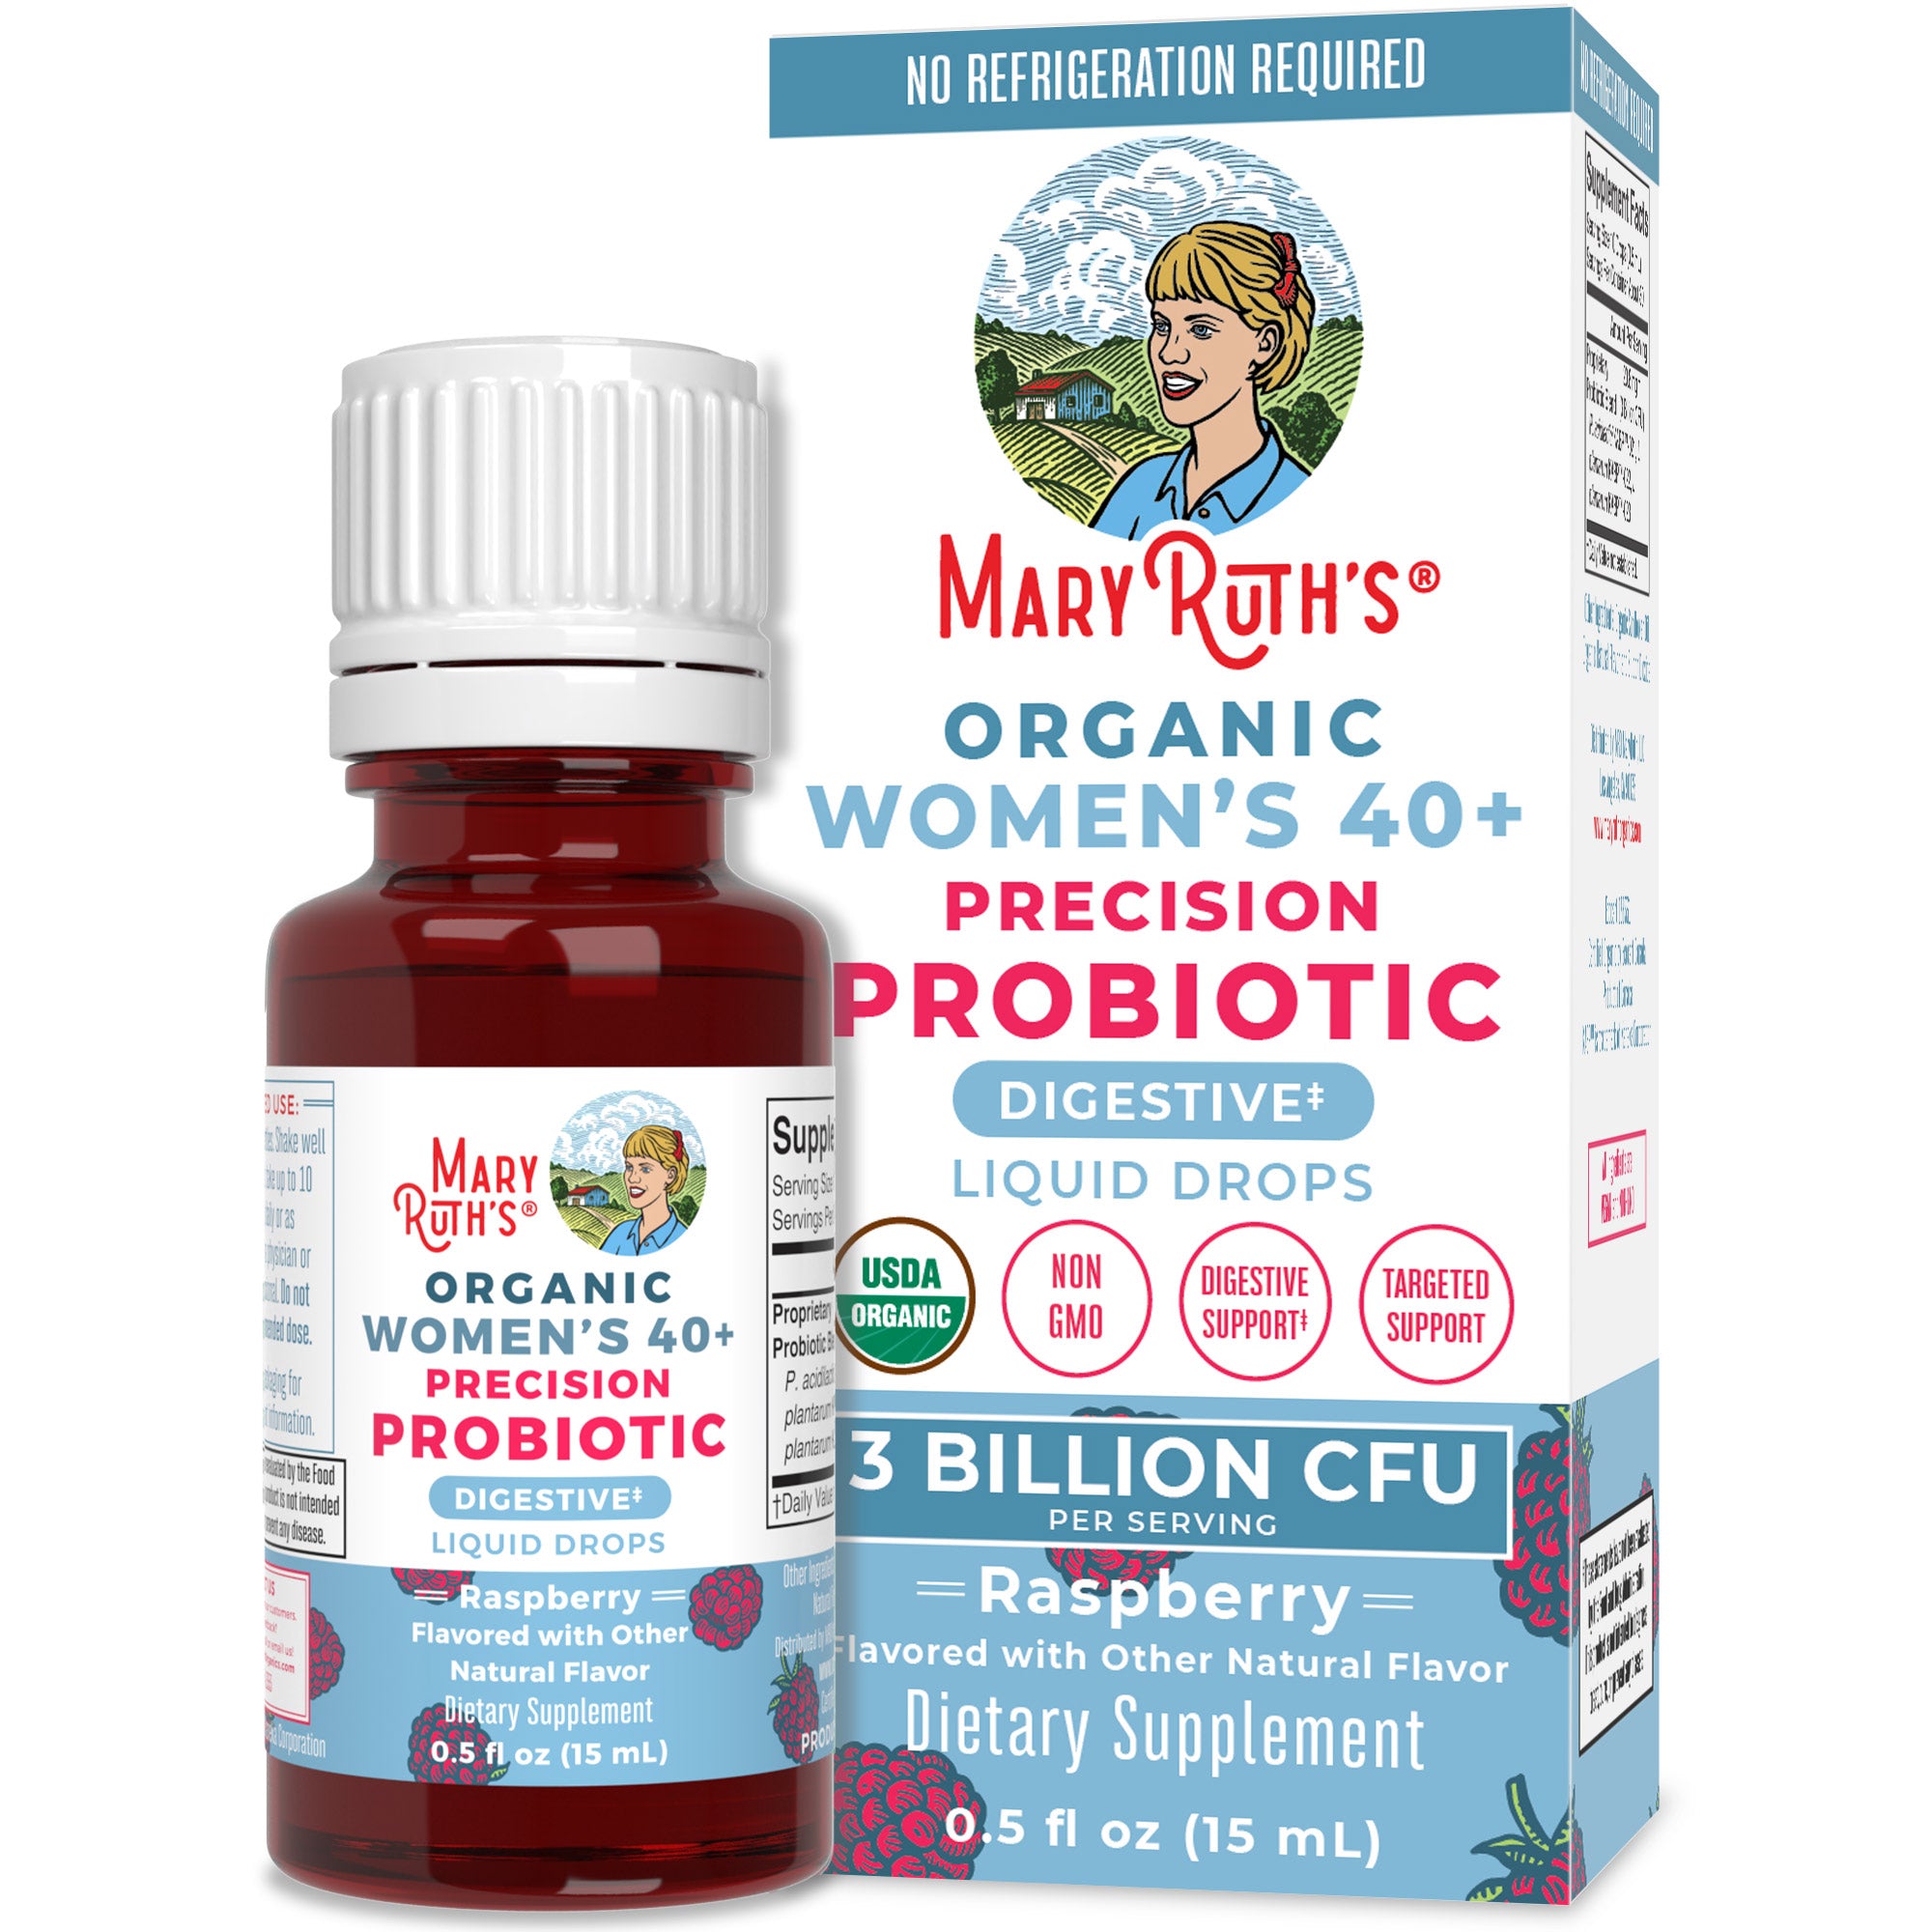 Organic Women's 40+ Precision Probiotic Digestive Liquid Drops